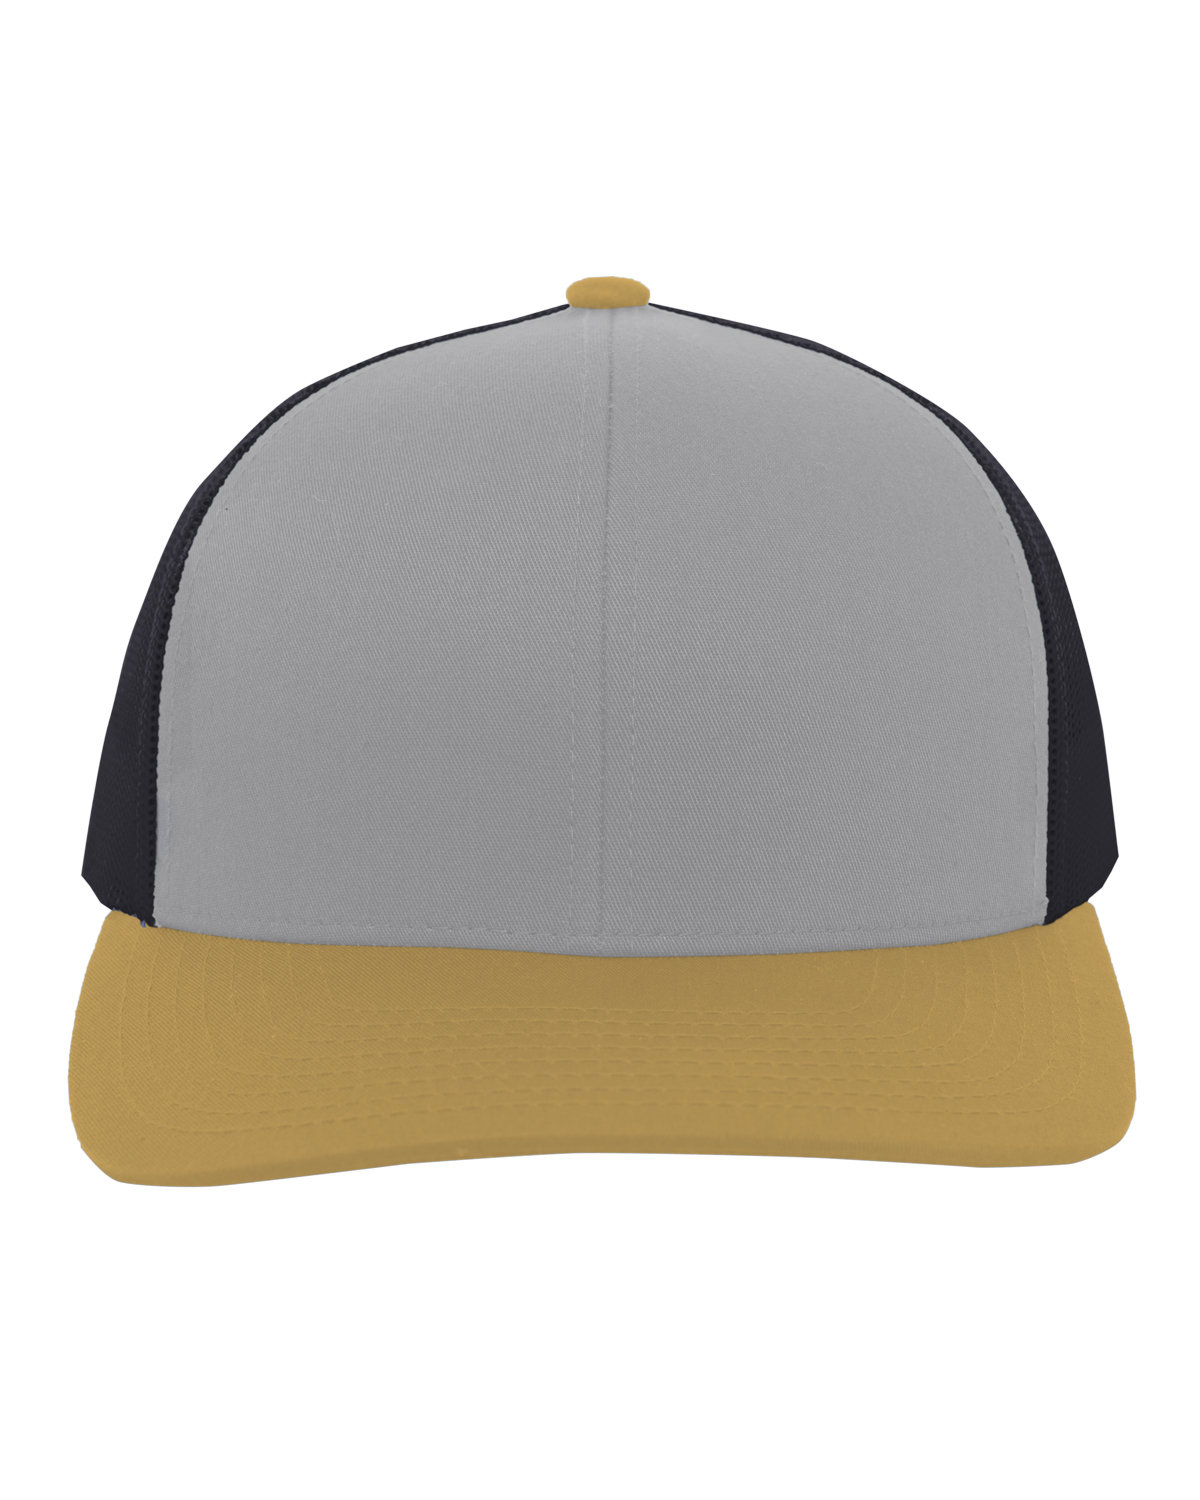 Pacific Headwear Trucker Snapback Hat HT GR/ LT C/ A G 